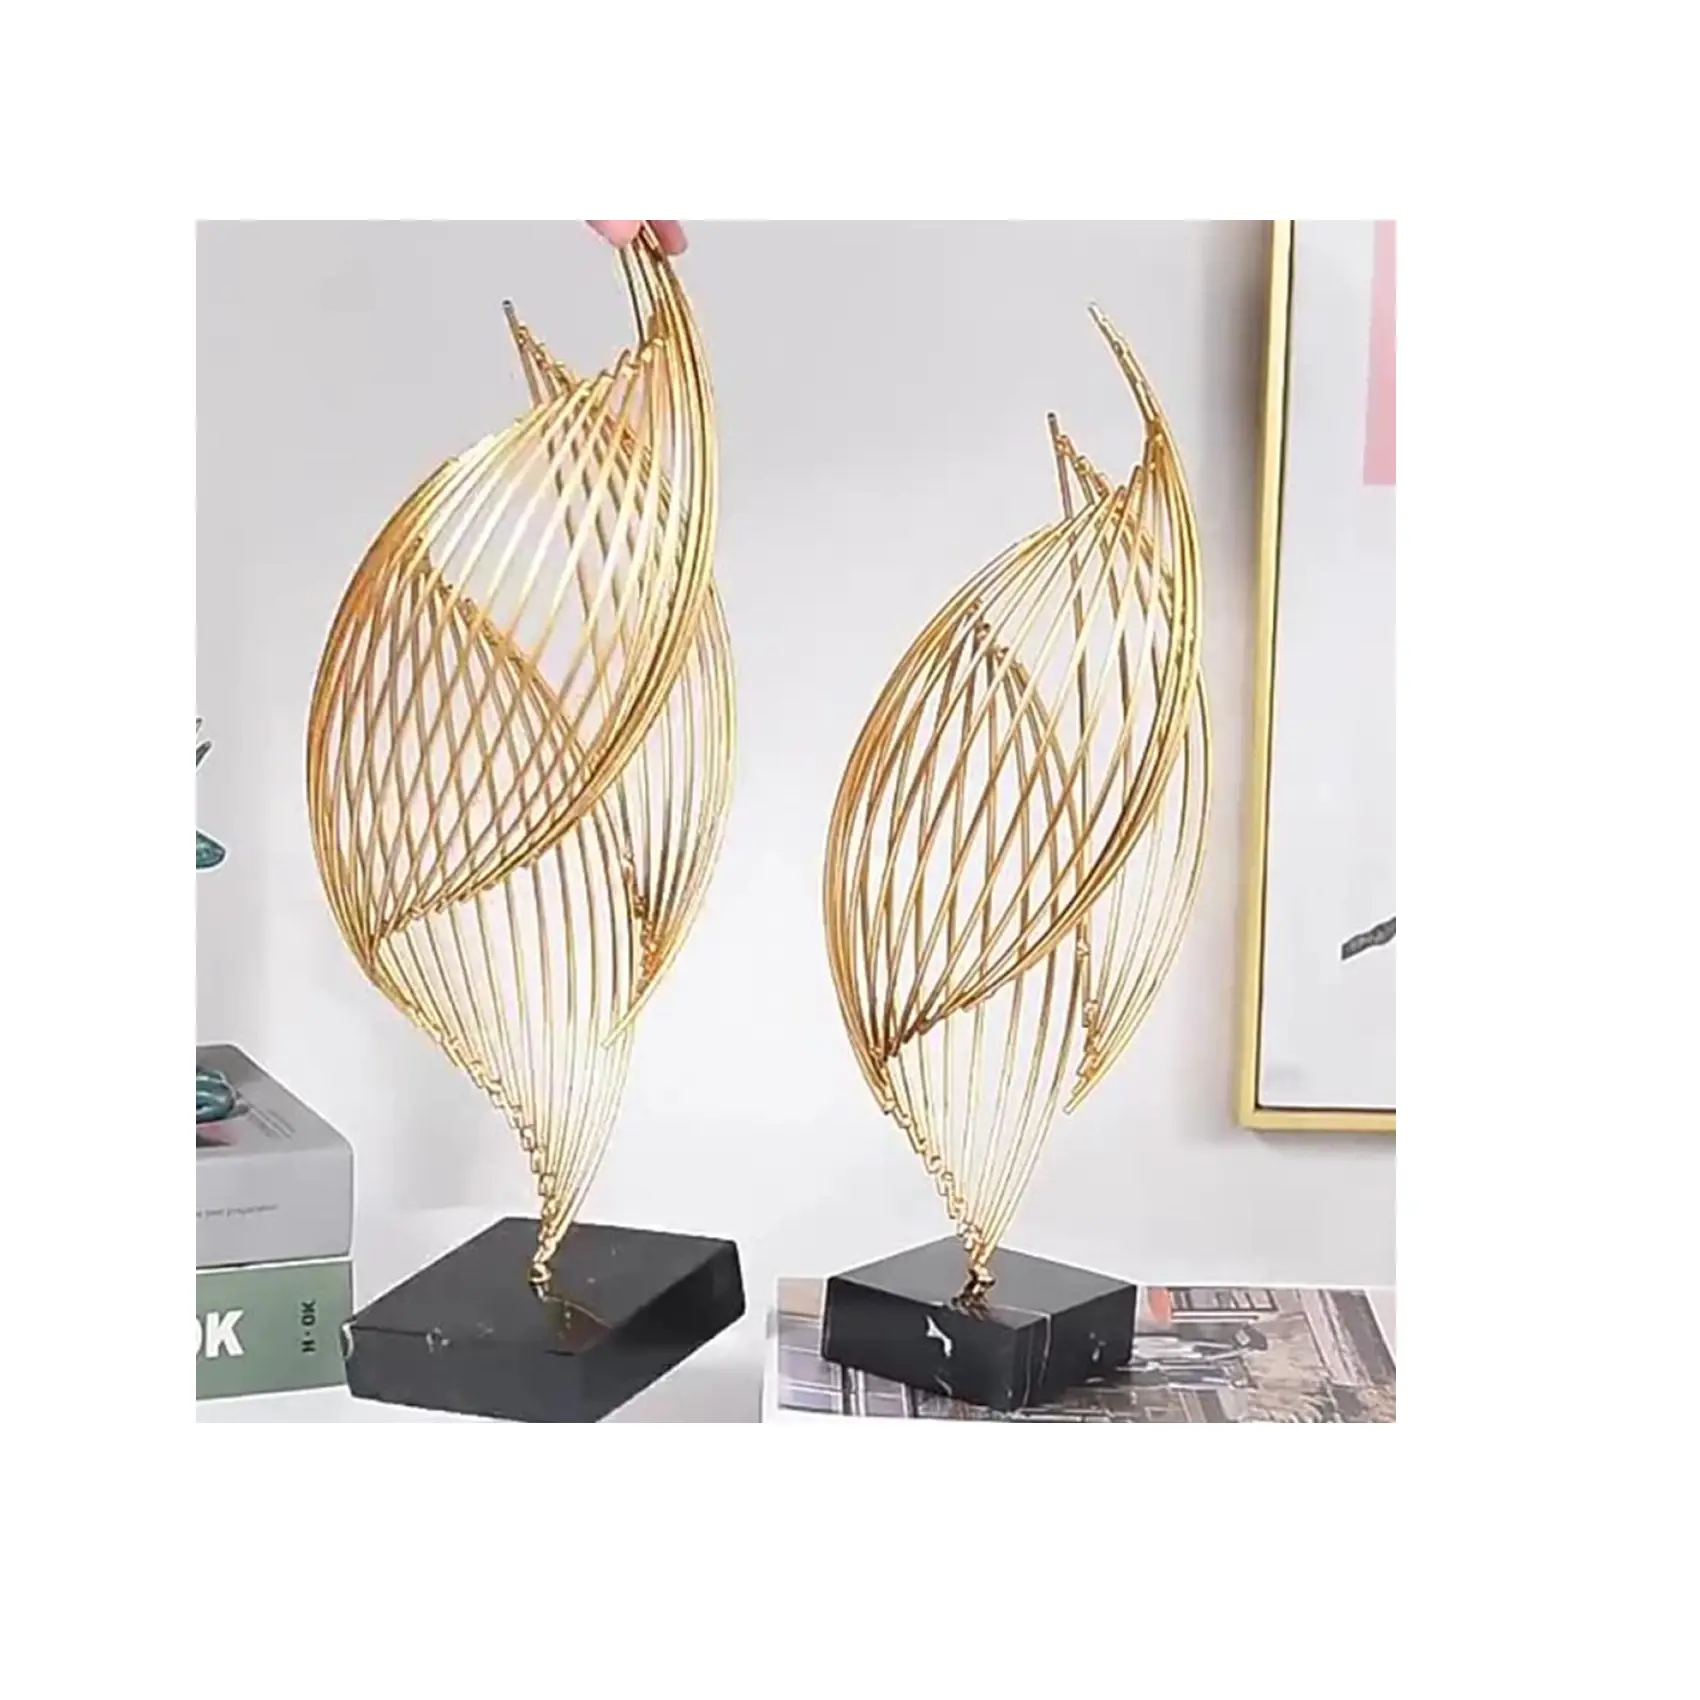 Fancy & Fantabulous thiết kế vàng & màu đen trang trí chất lượng tốt nhất hiện đại bán buôn Fancy New thiết kế điêu khắc để bán